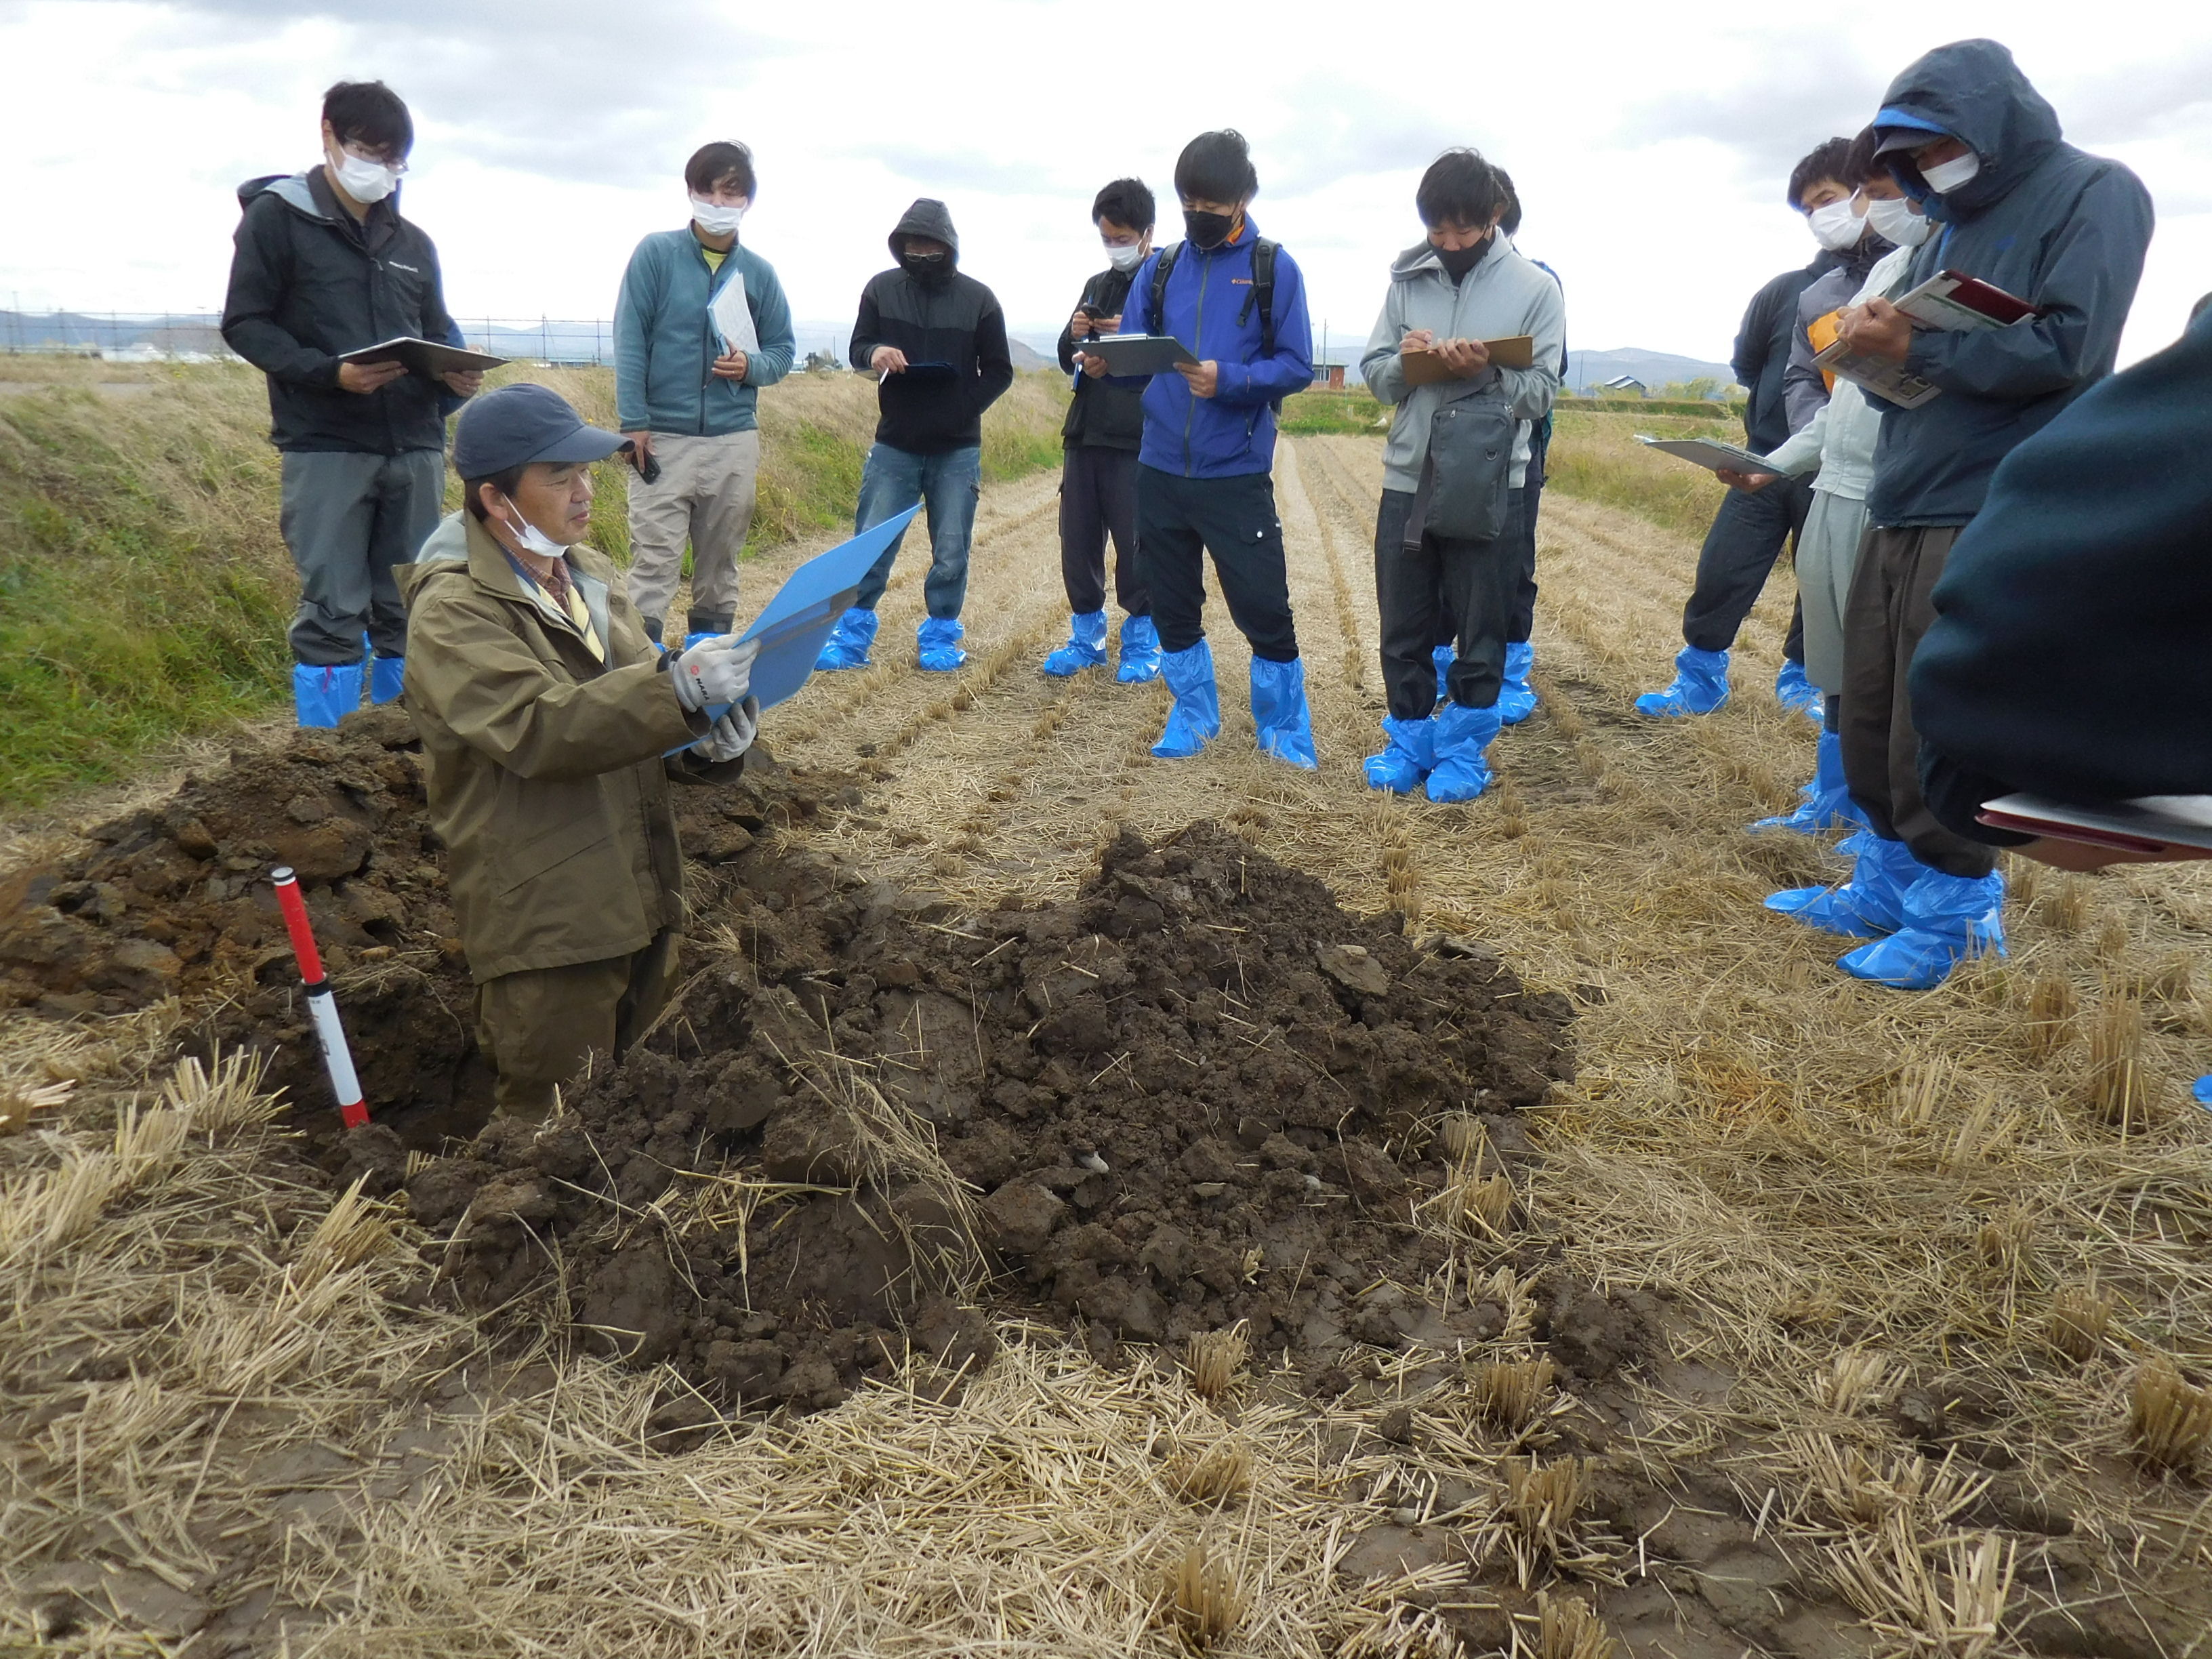 上川農試研究員による土壌断面調査の実演